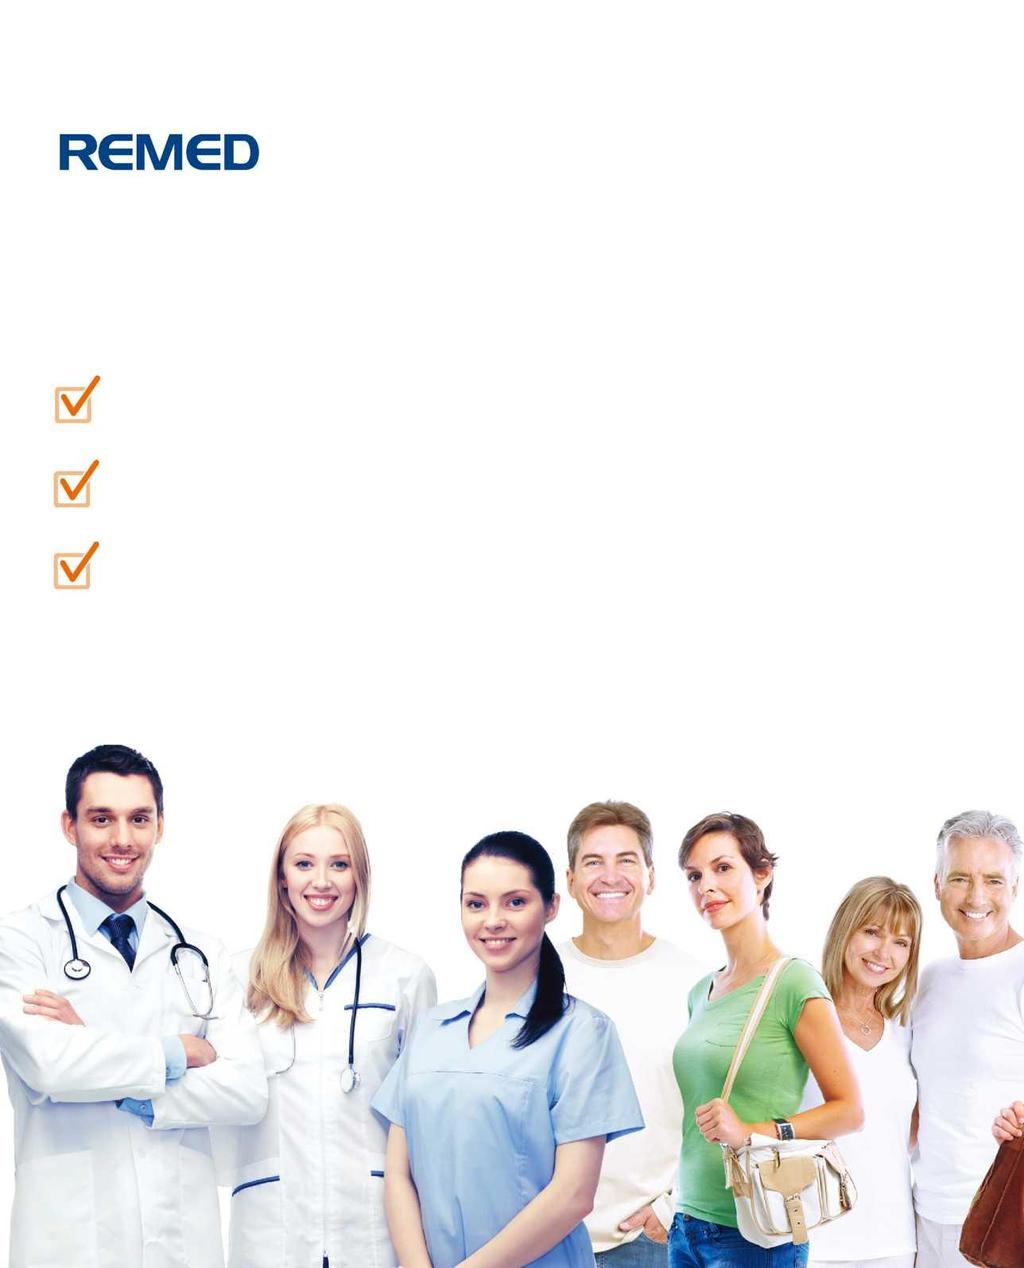 REMED, 2003 yılında kuruluşundan beri, dünyanın ilk elektromanyetik stimülasyon cihazını üreterek dünyanın her bir yanında farklı fiziksel rahatsızlıklar yaşayan hastaların tedavisi için çalışmıştır.